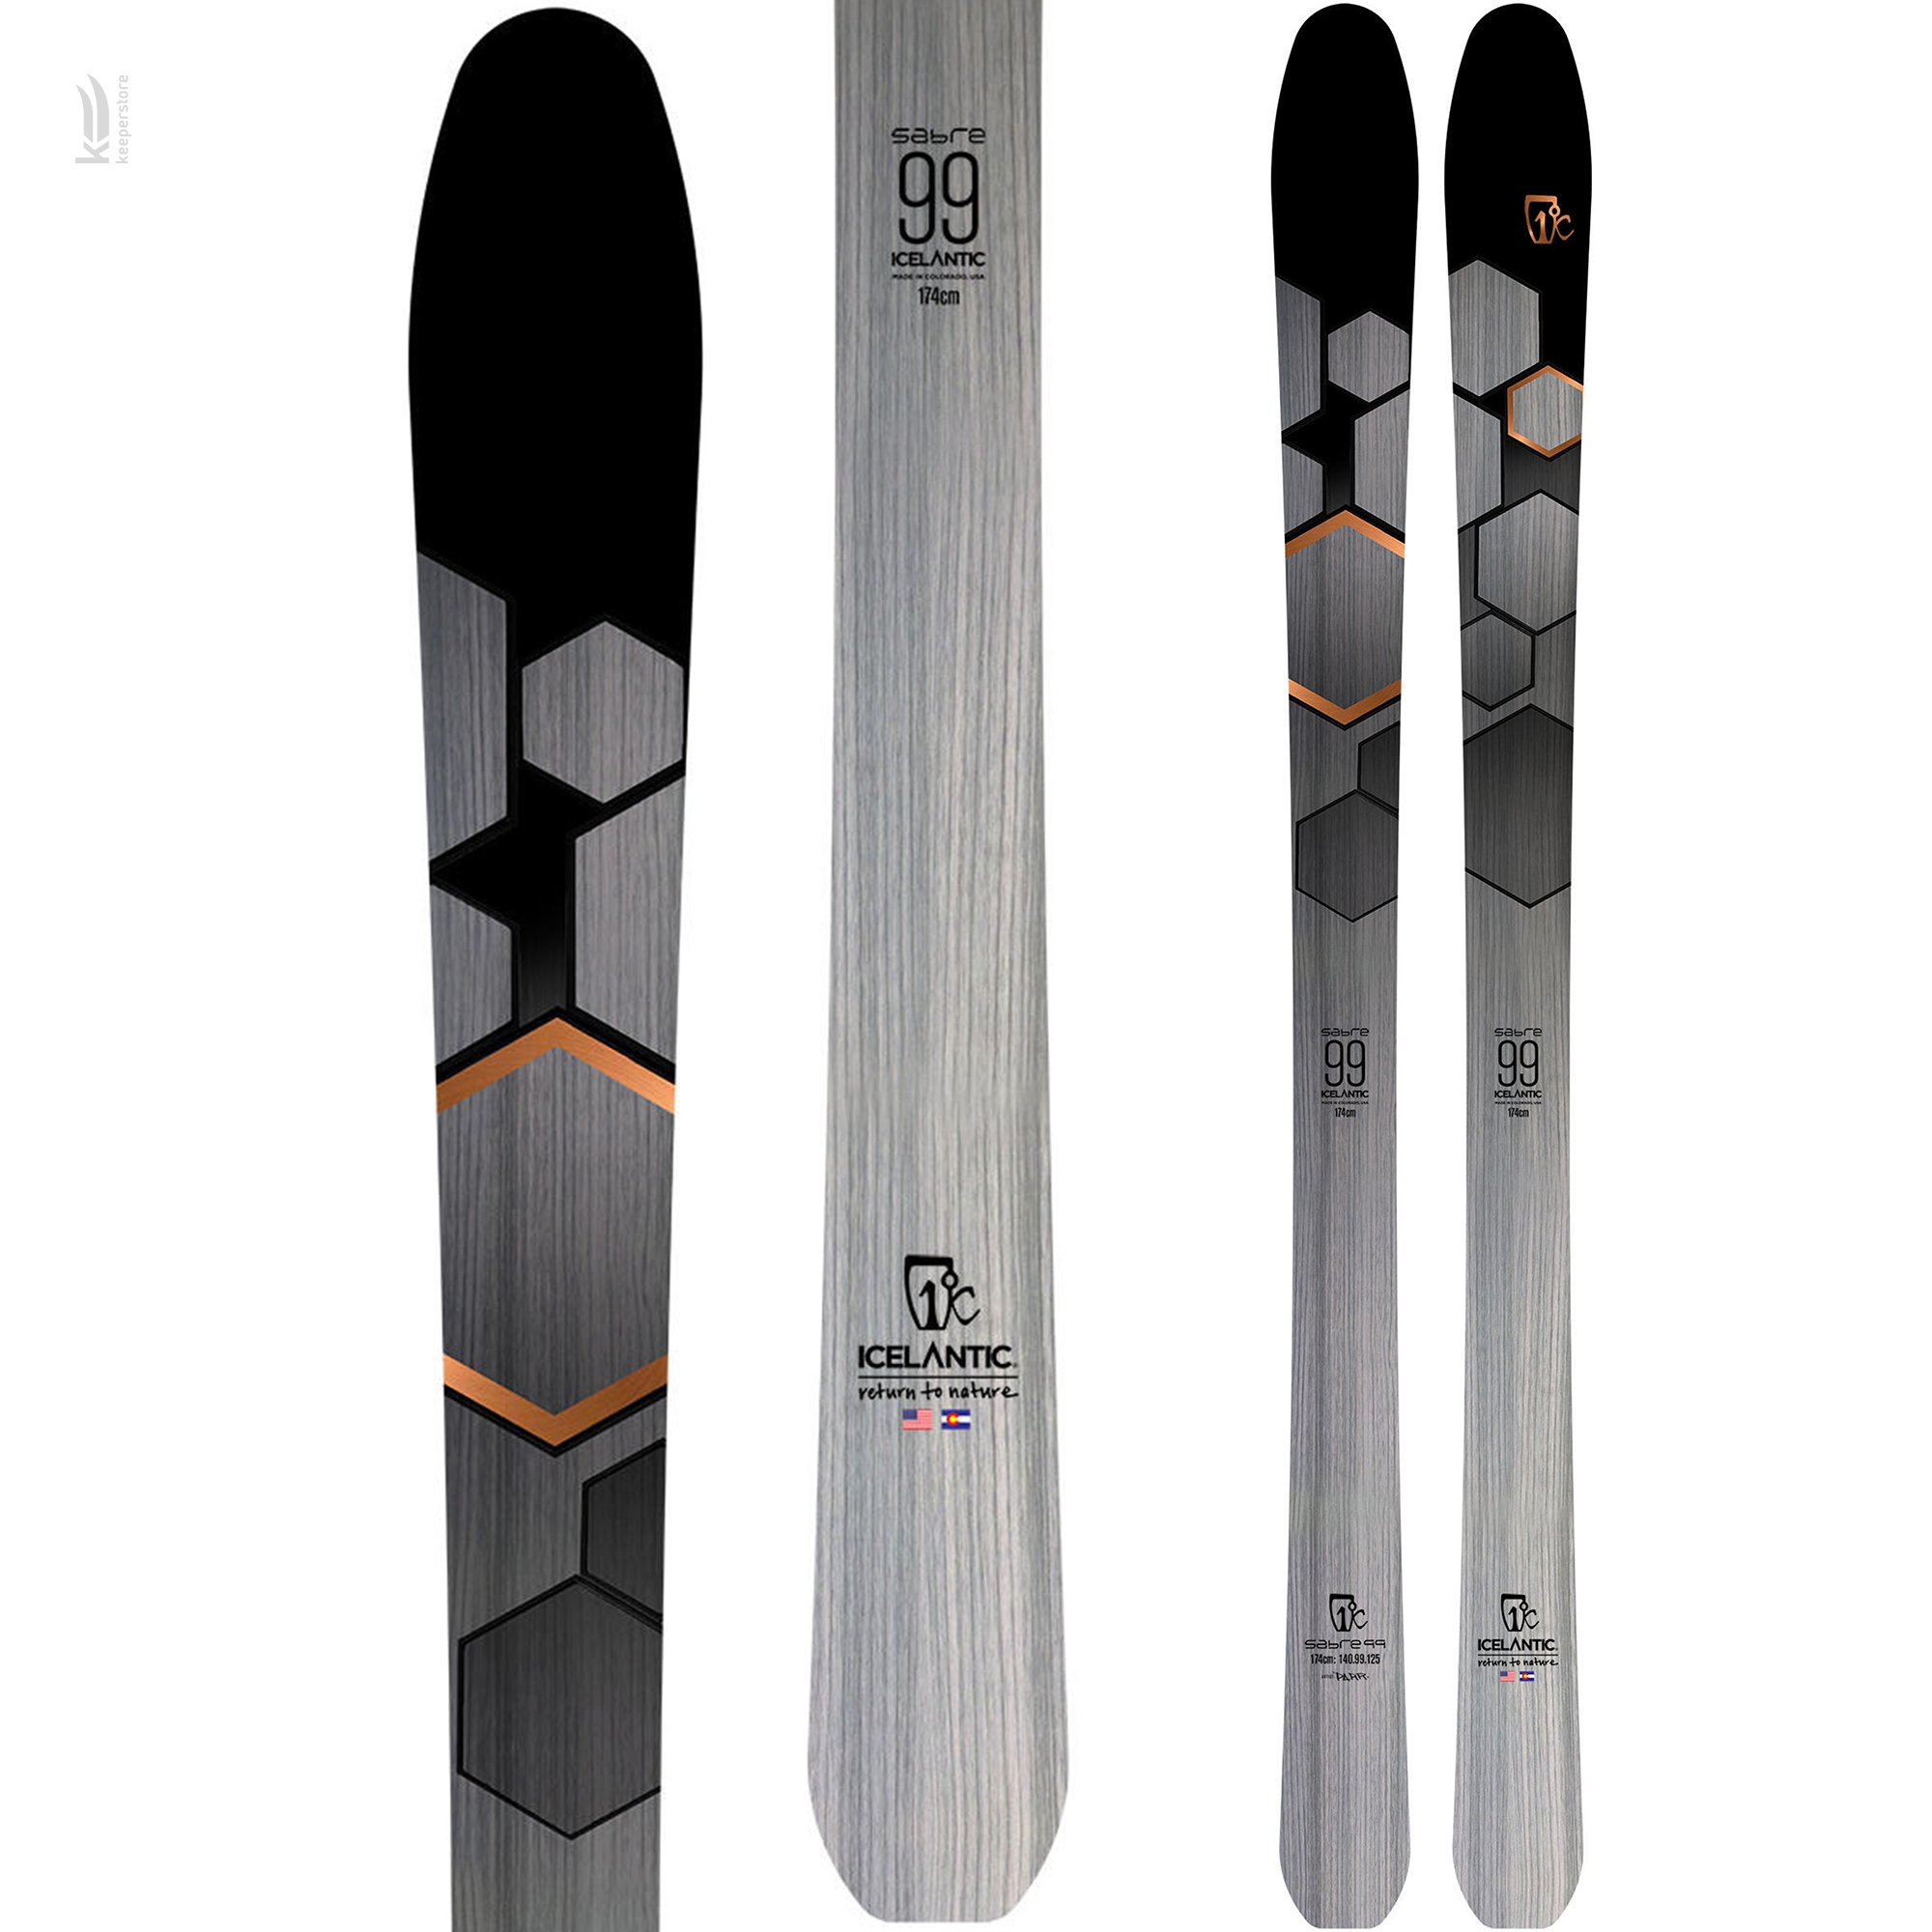 Лыжи для новичков Icelantic Sabre 99 2019/2020 174cm